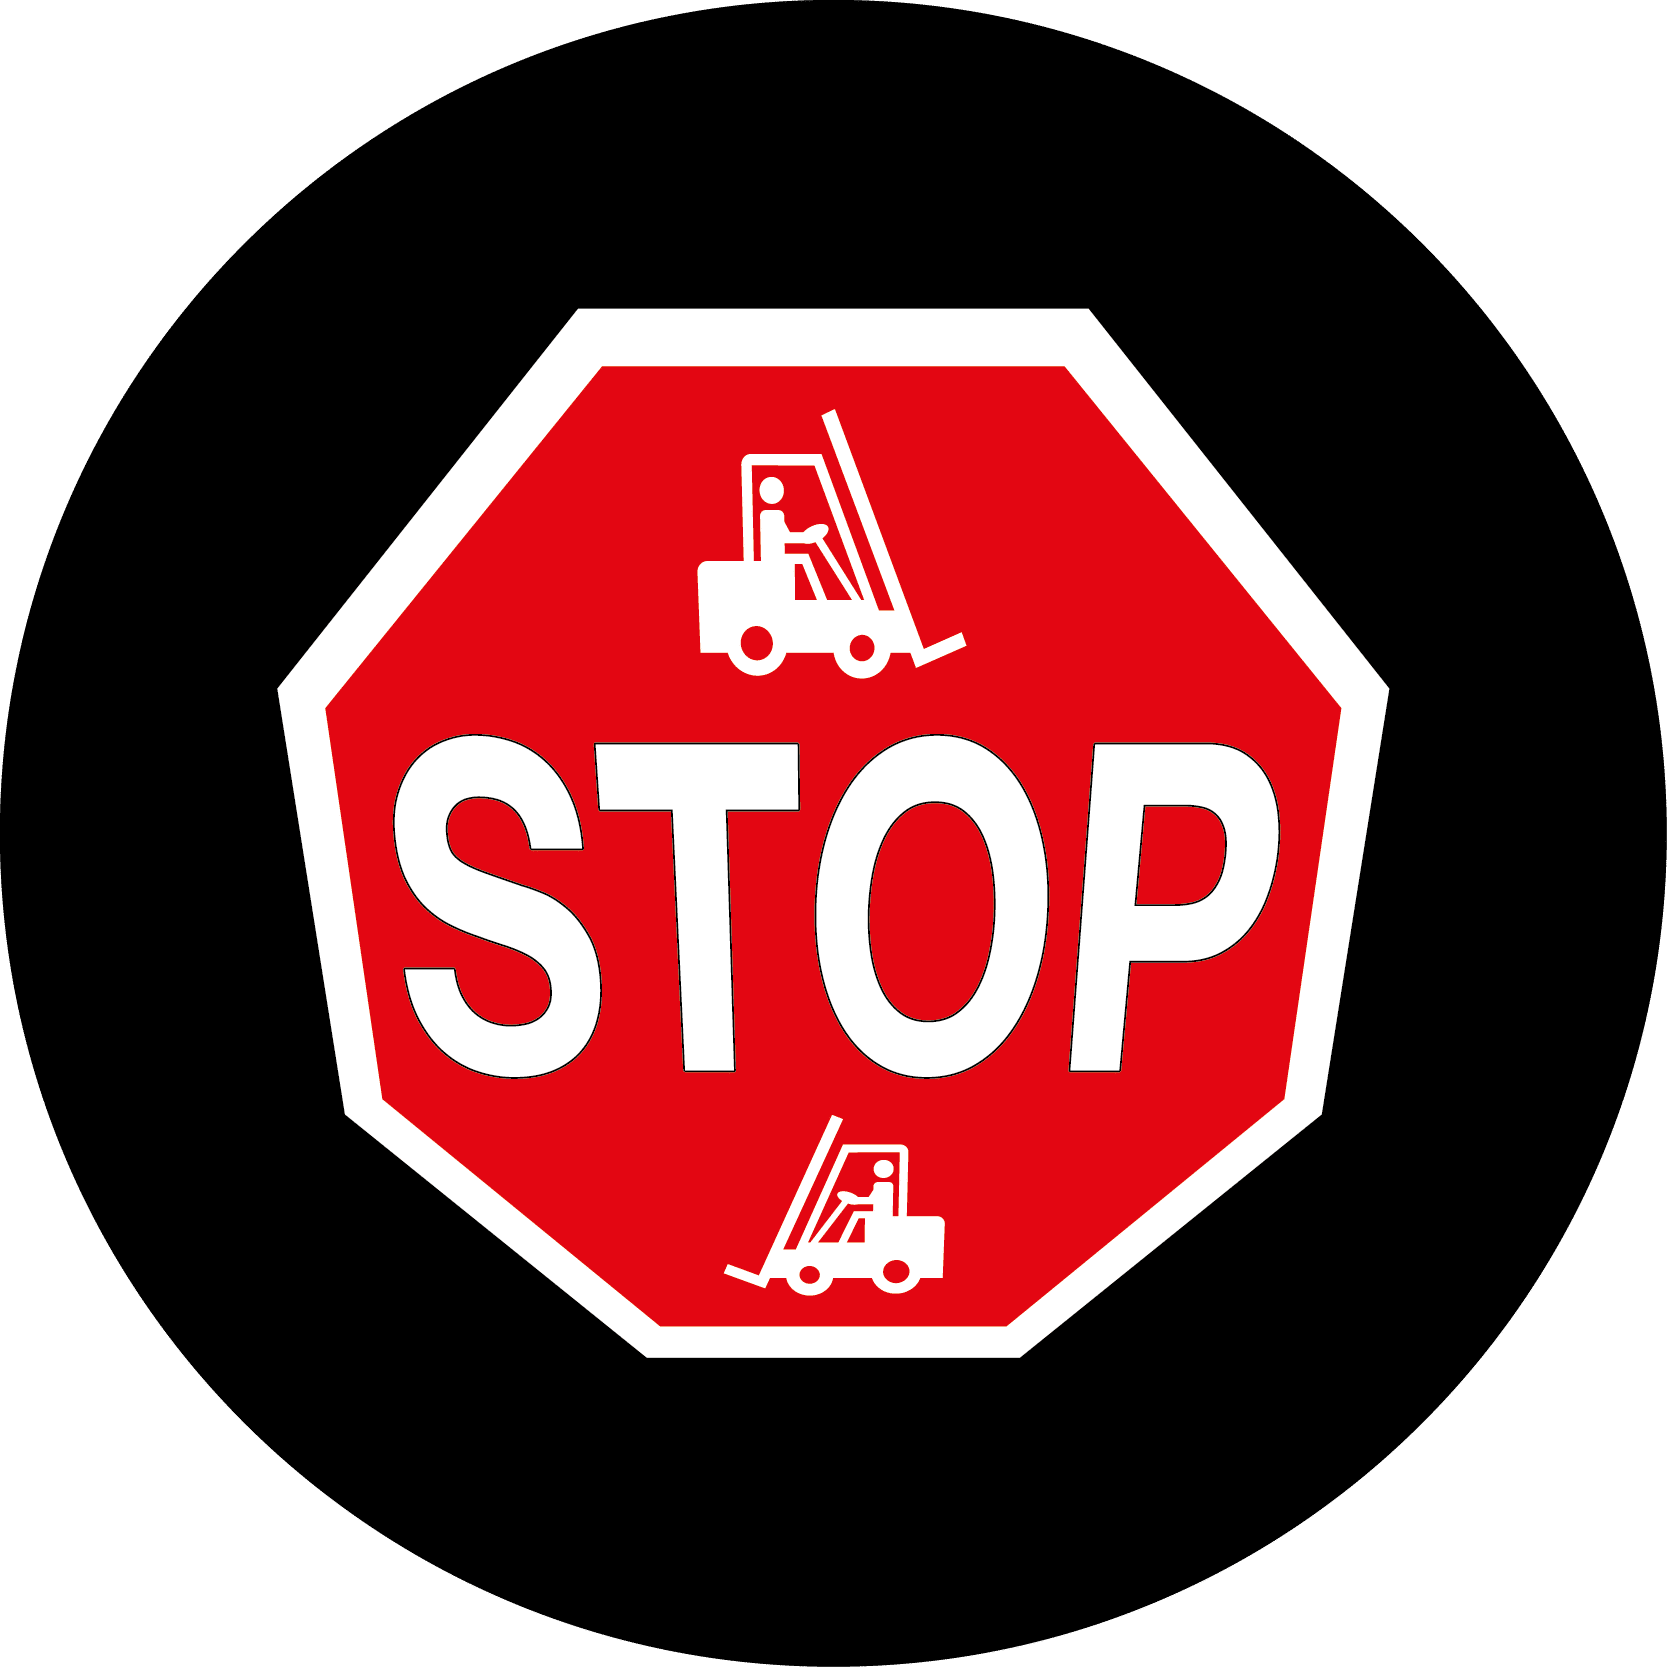 Gobo - STOP forklift